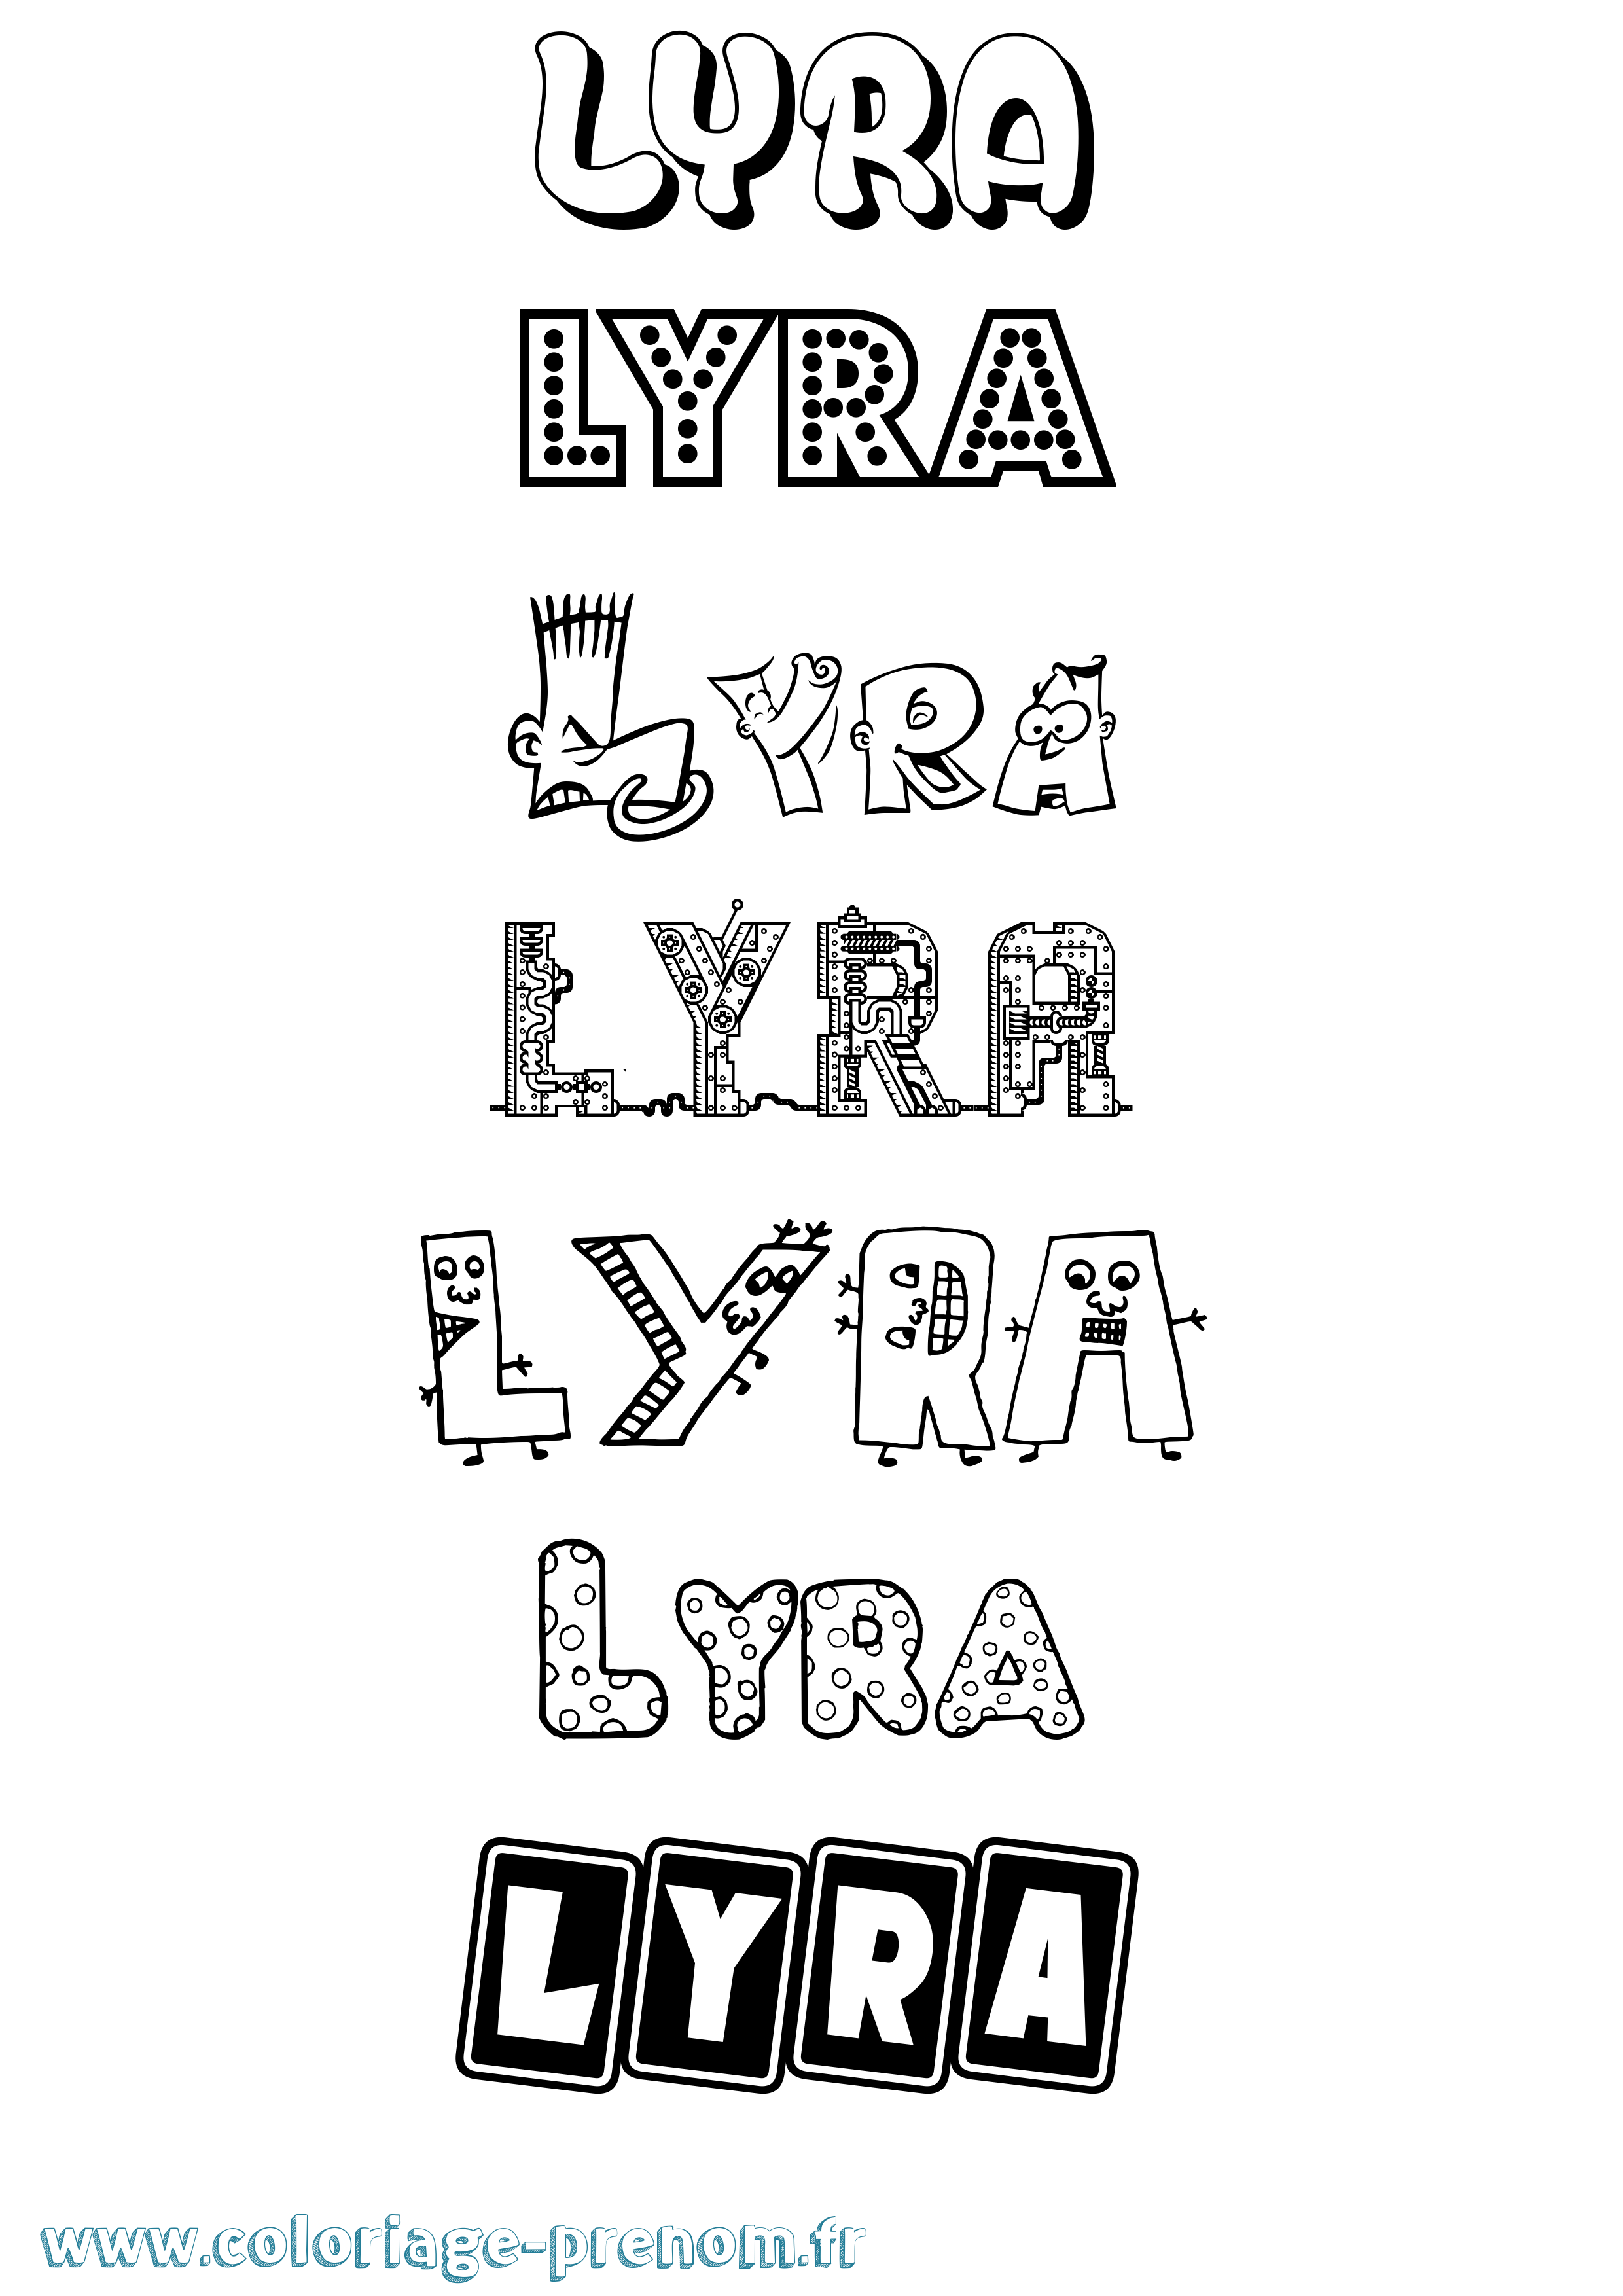 Coloriage prénom Lyra Fun